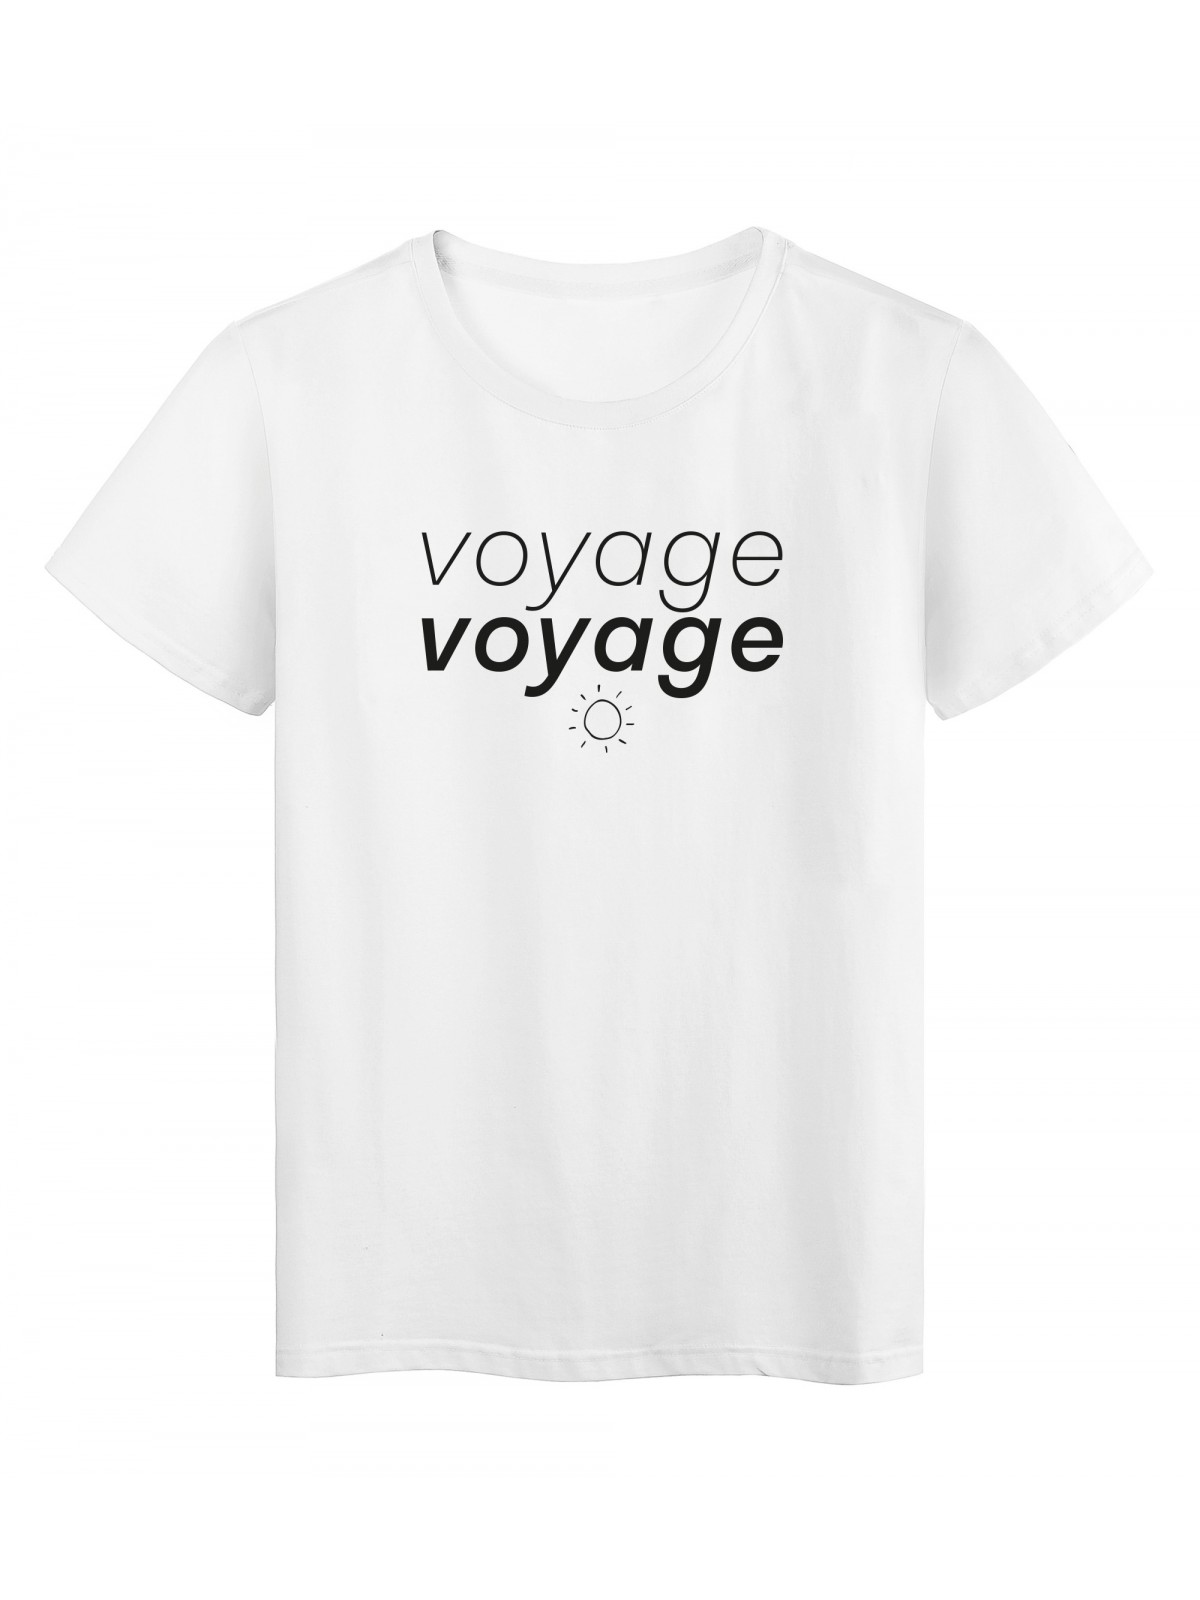 T-Shirt imprimÃ© citation voyage voyage